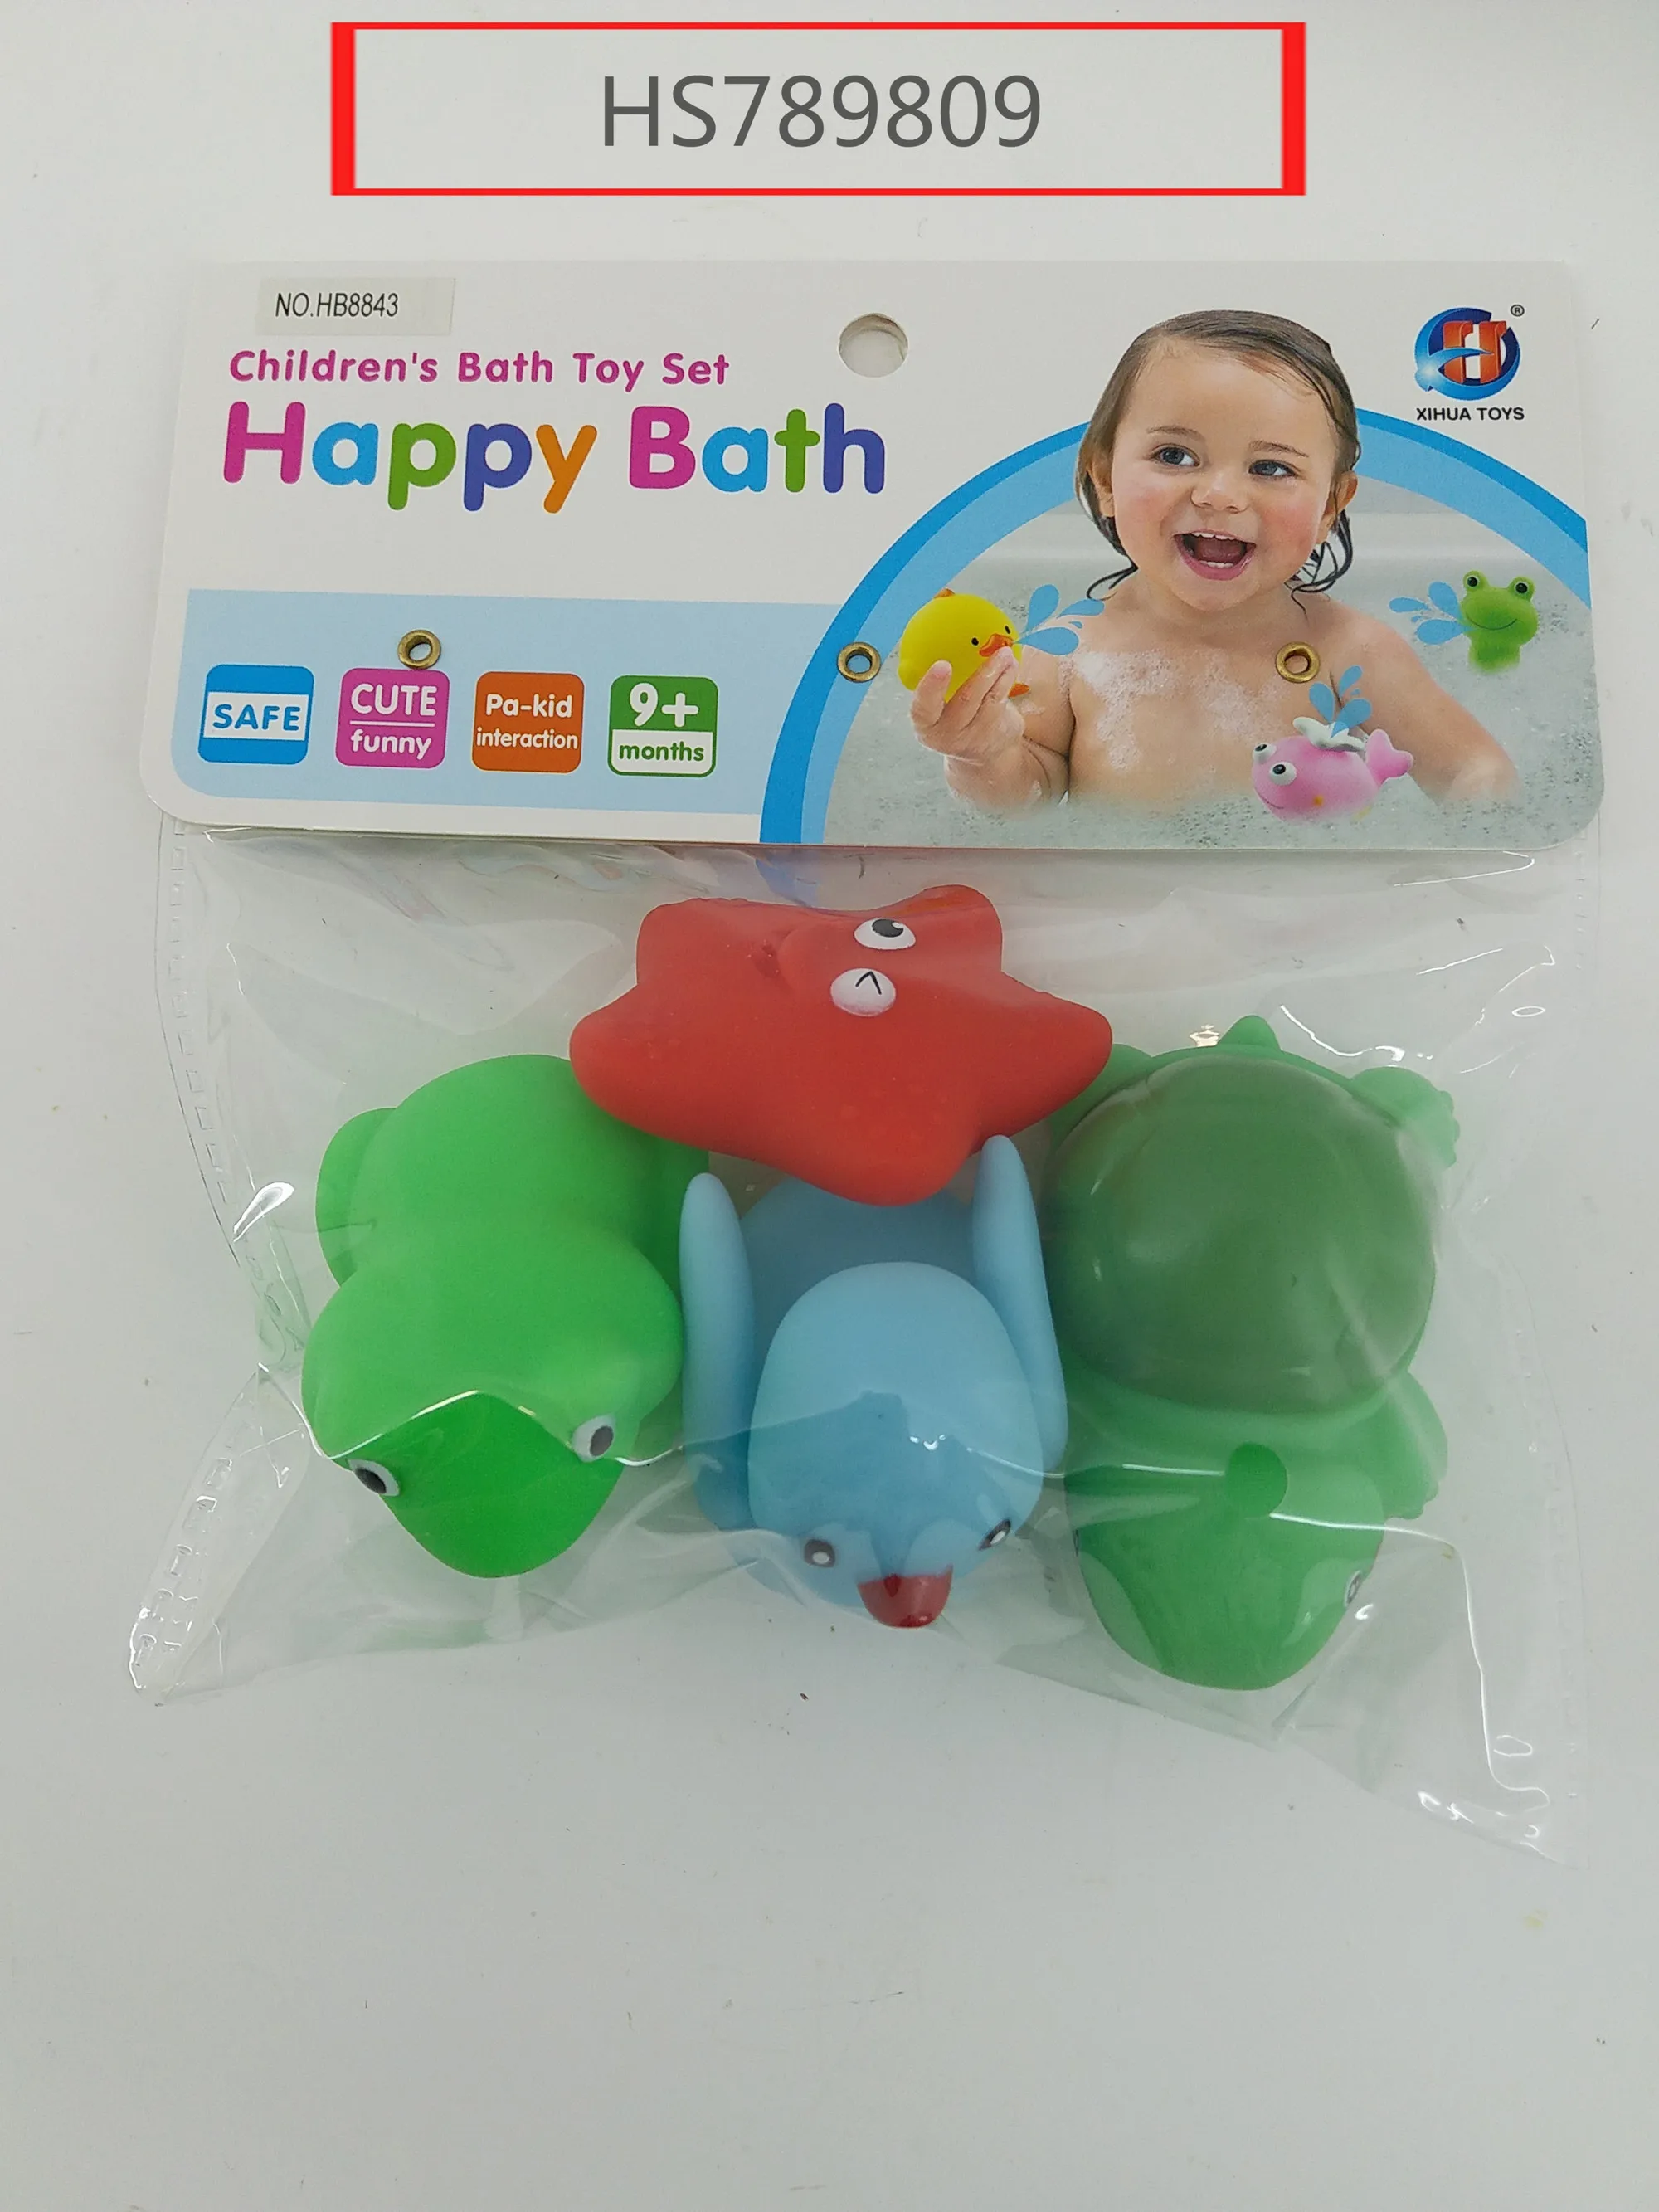 HS789809, Huwsin Toys, children's bath toy set